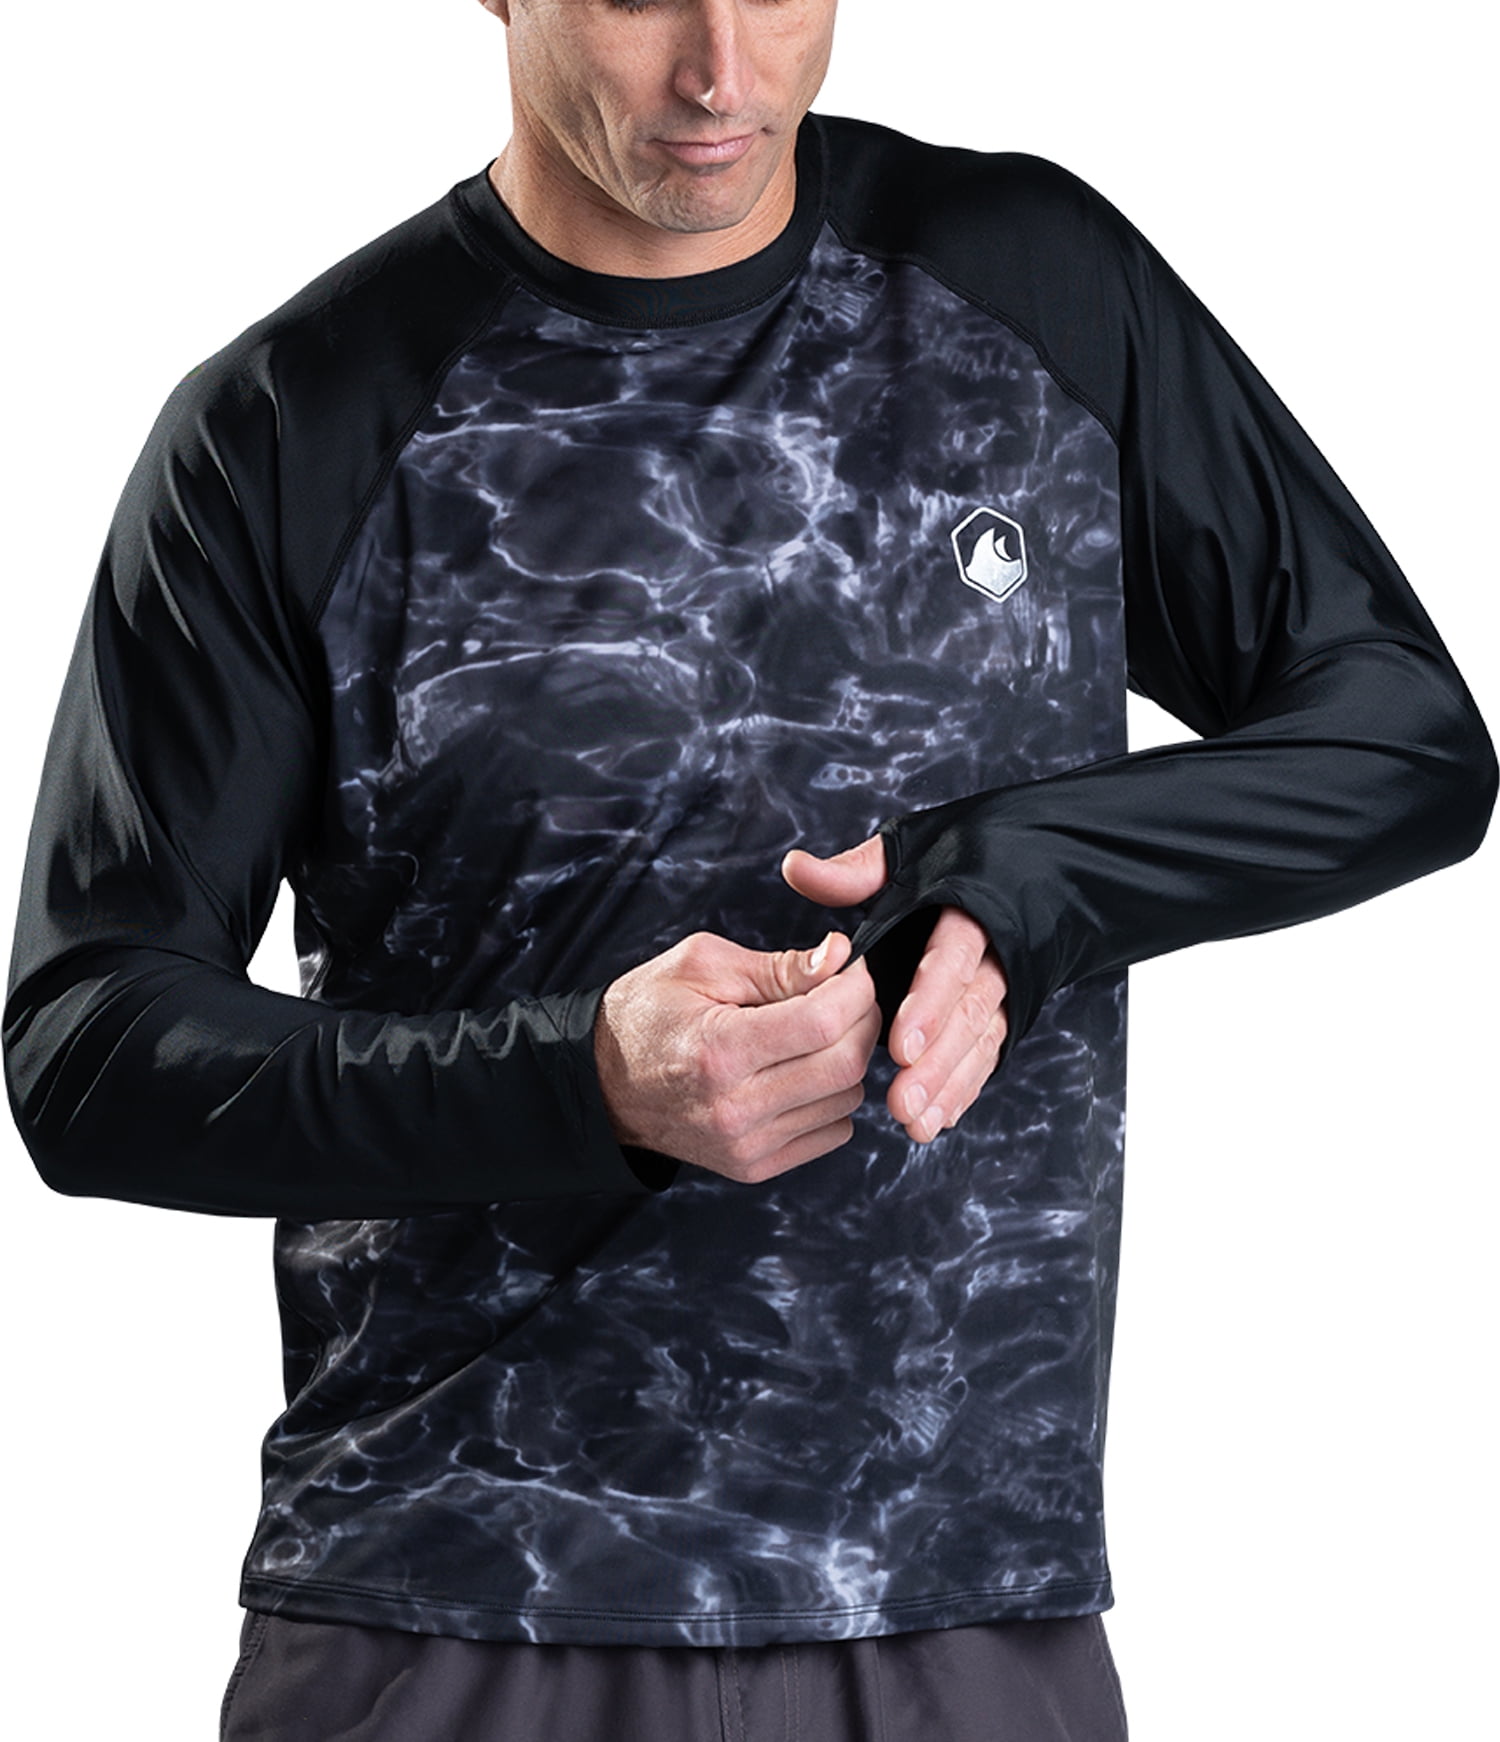 All Day Wave - Long Sleeve UPF 50 Rash Vest for Men